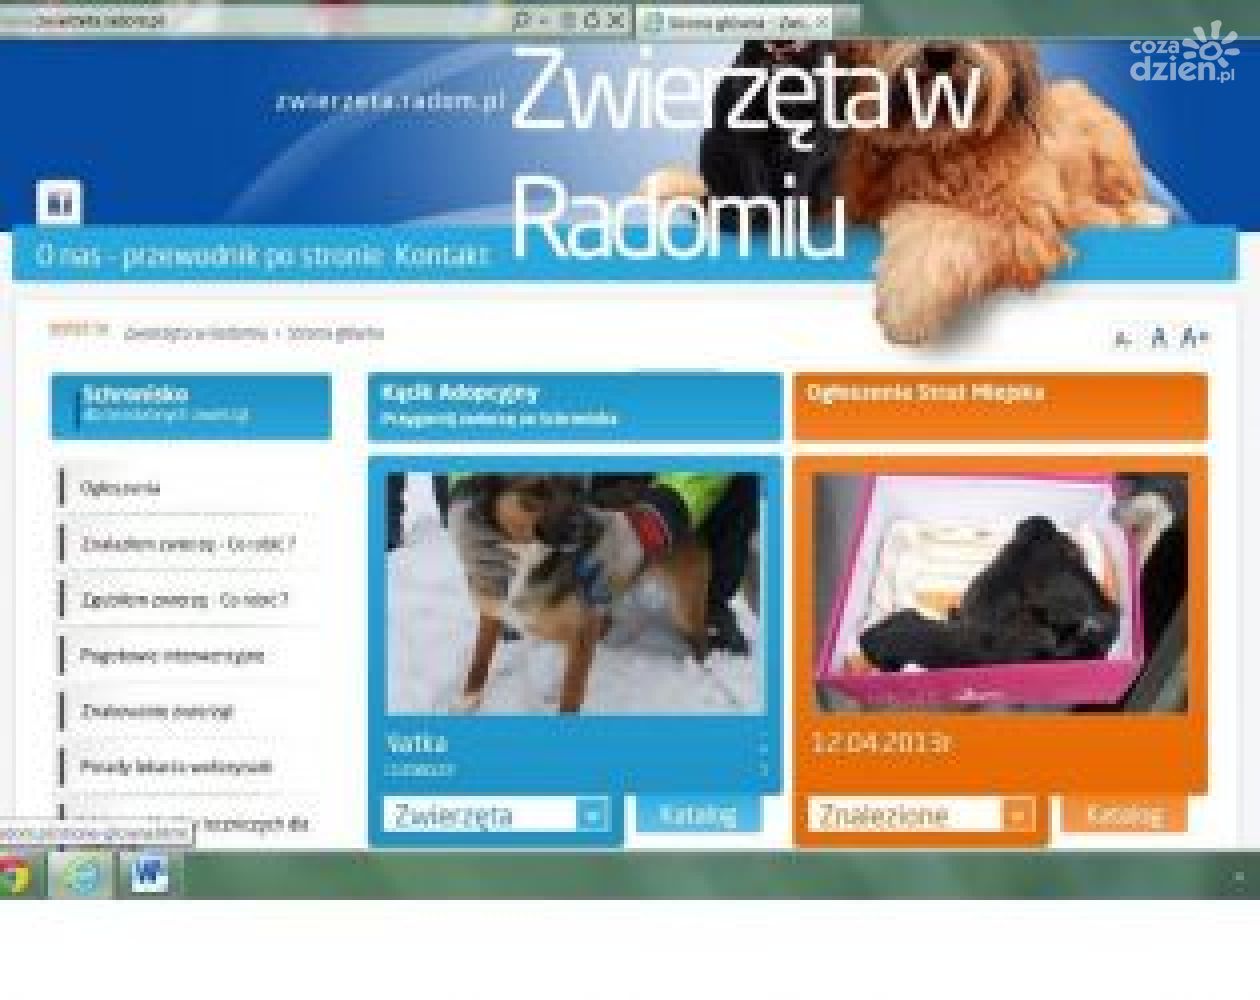 Zaginął twój pupil? Wejdź na www. zwierzeta.radom.pl